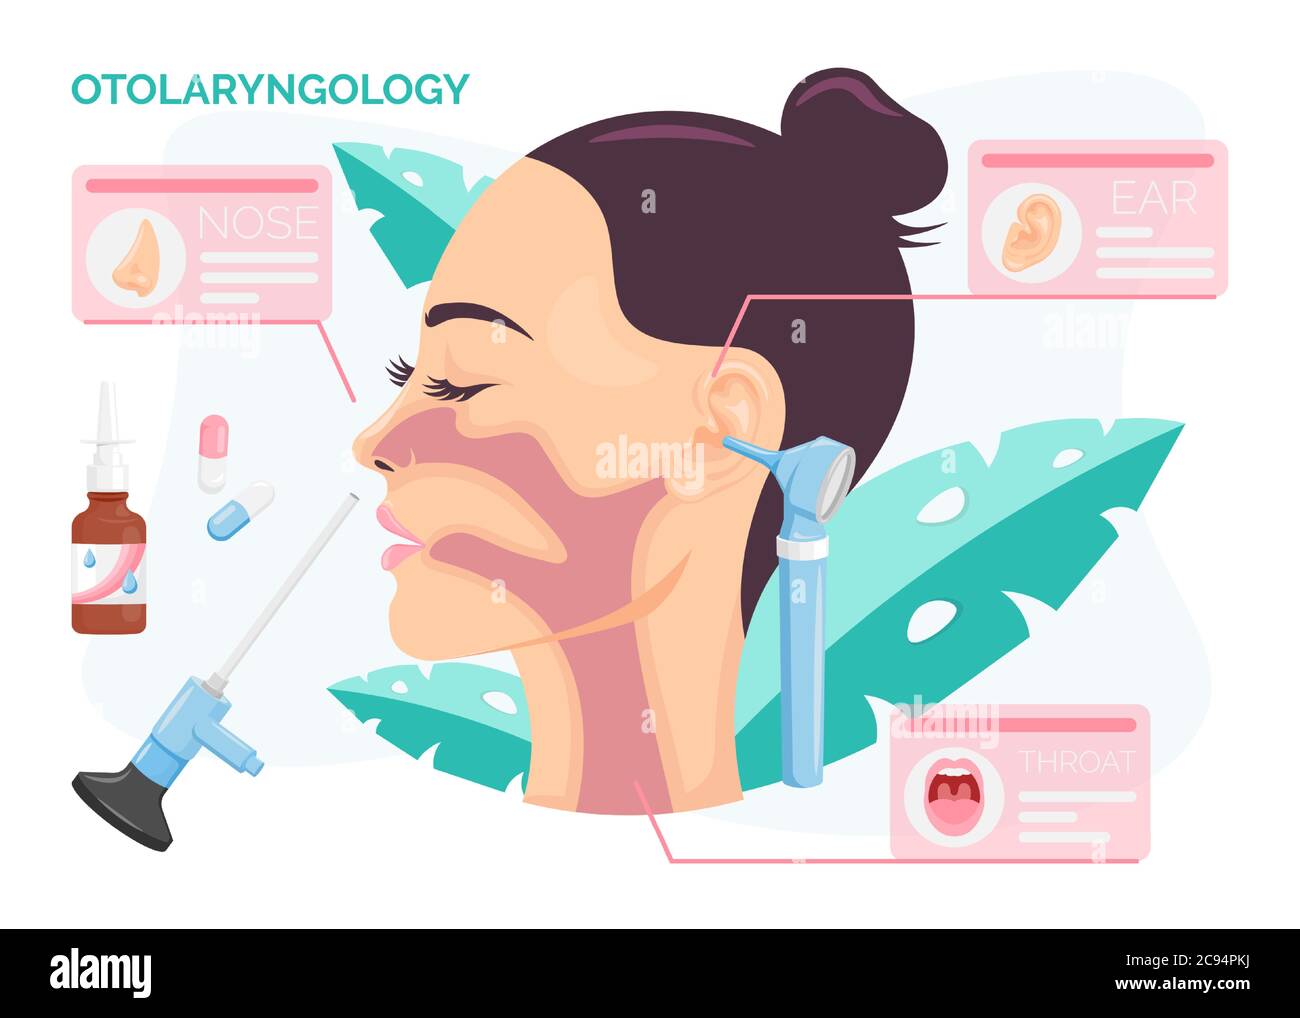 Concepto de Otolaringología. Mujer que se somete a tratamiento de oído, nariz o garganta en la clínica ENT, ilustración vectorial aislada en dibujos animados de estilo plano Ilustración del Vector